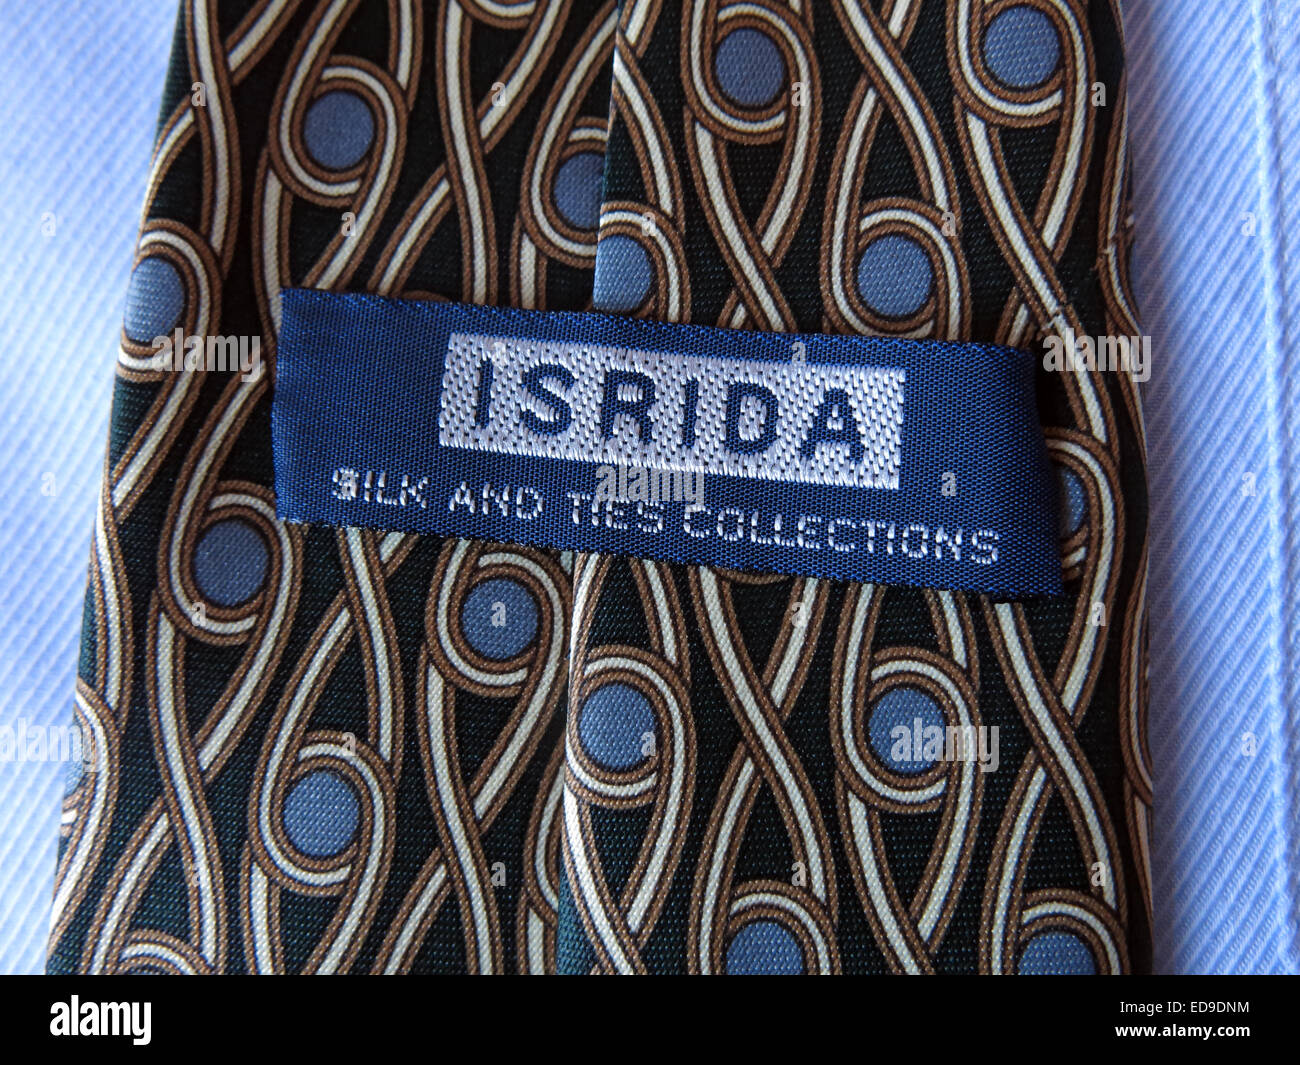 Isrida intéressantes collections vintage cravate, homme neckware en soie Banque D'Images